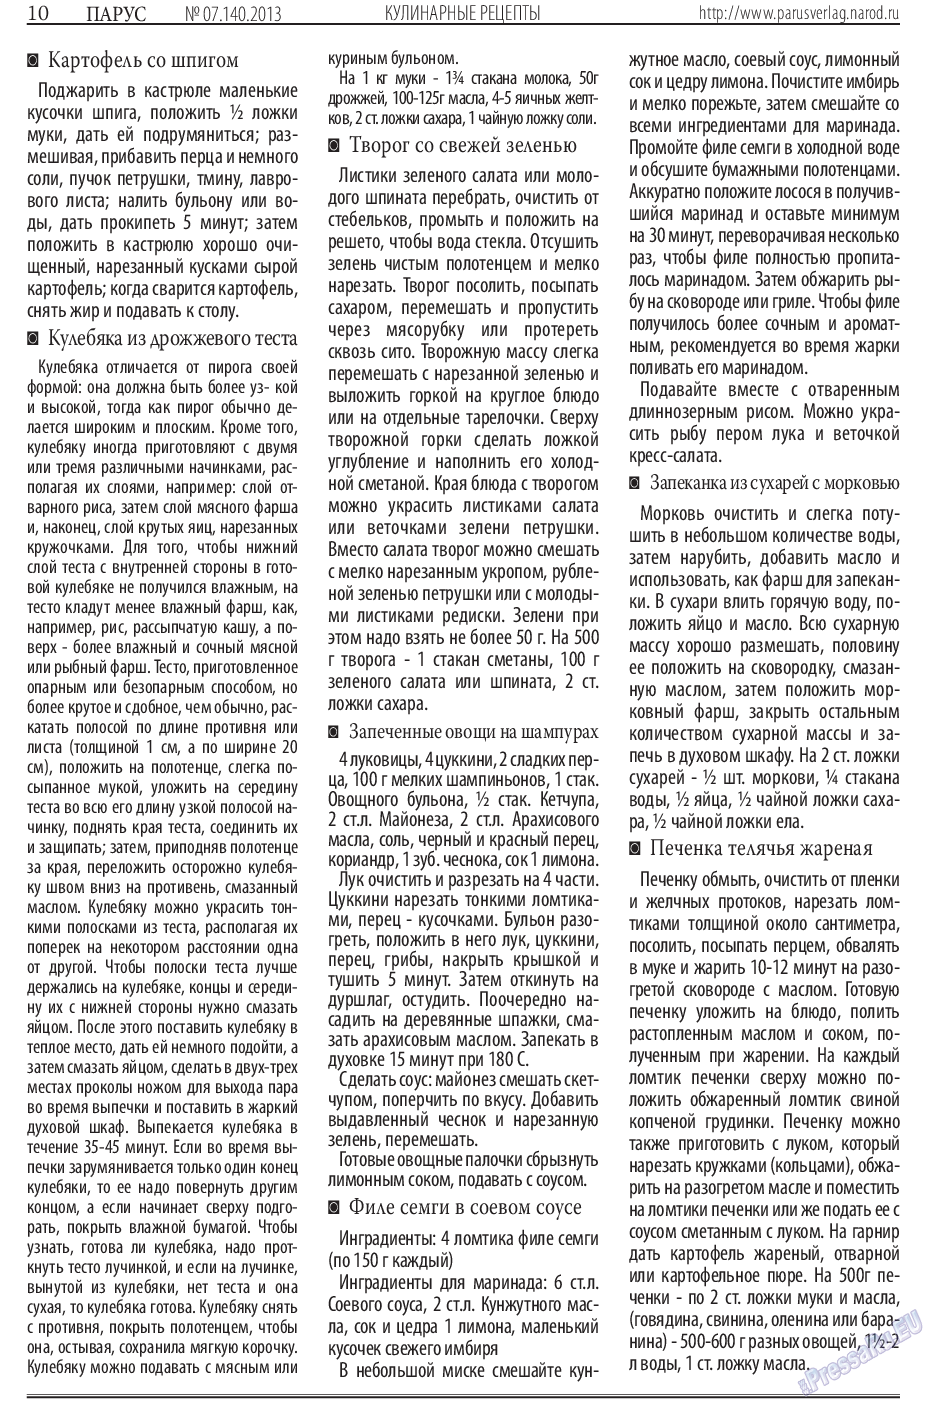 Парус (газета). 2013 год, номер 7, стр. 10